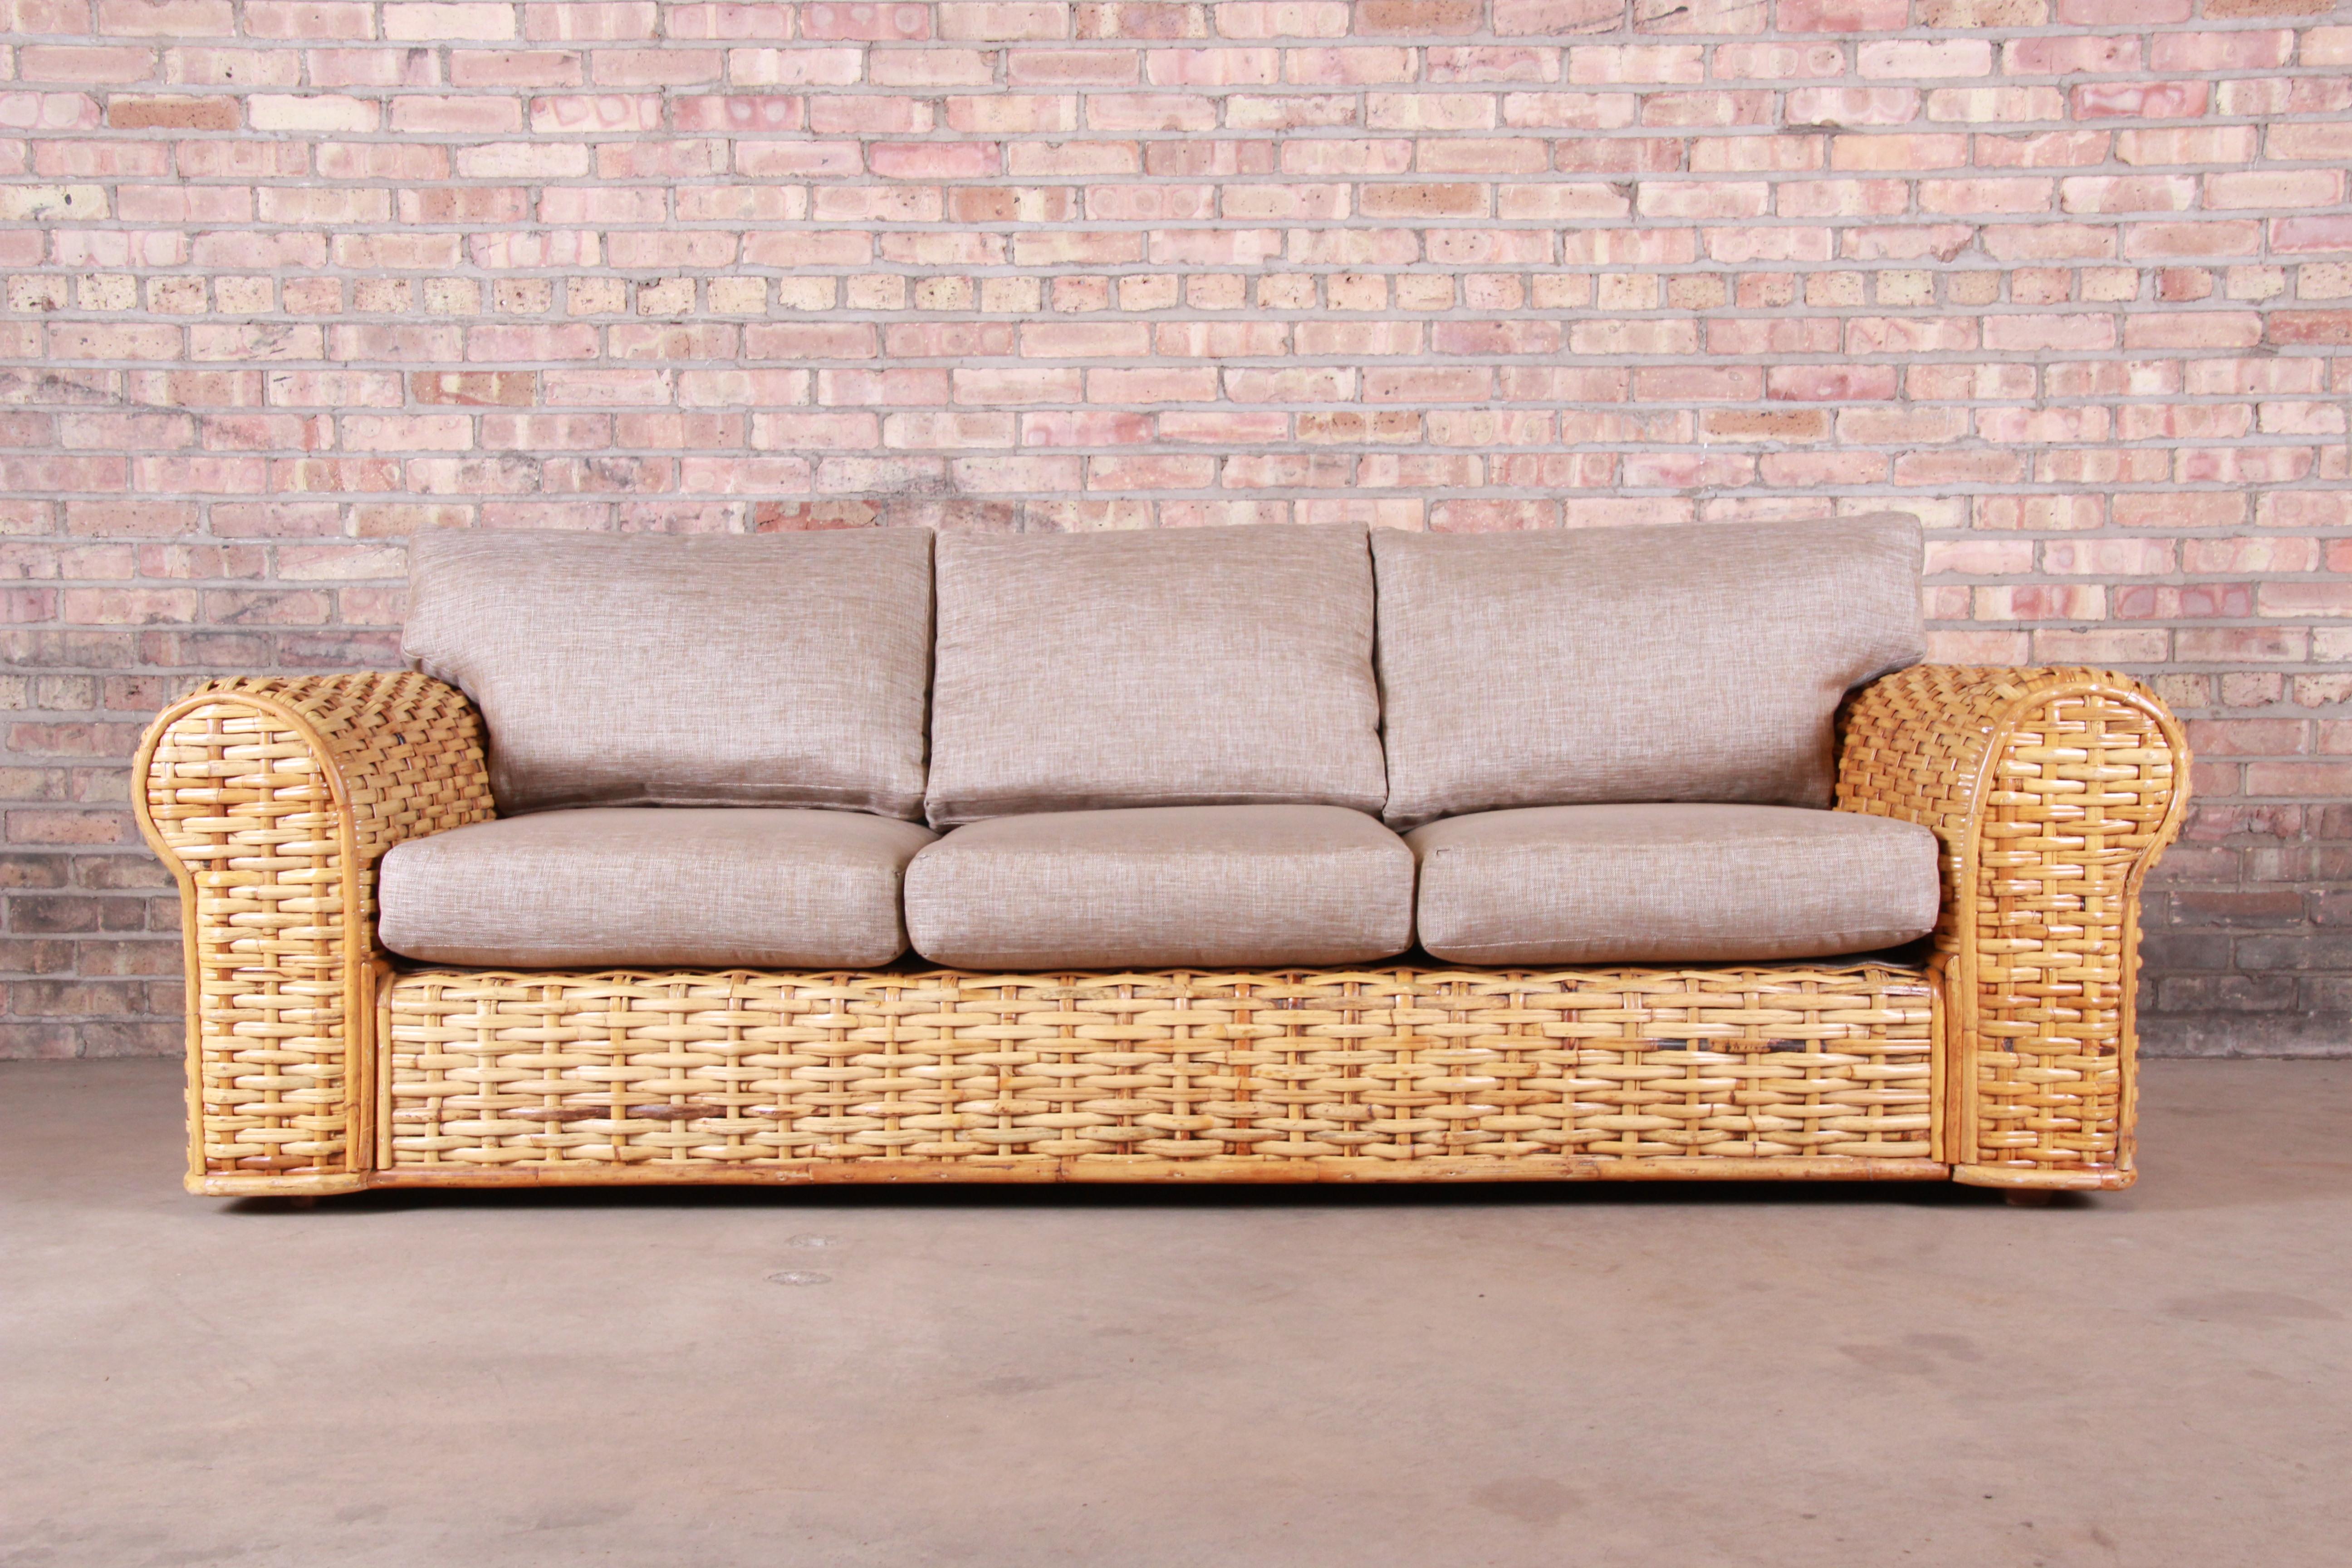 An exceptional organic modern woven rattan sofa

By Ralph Lauren 